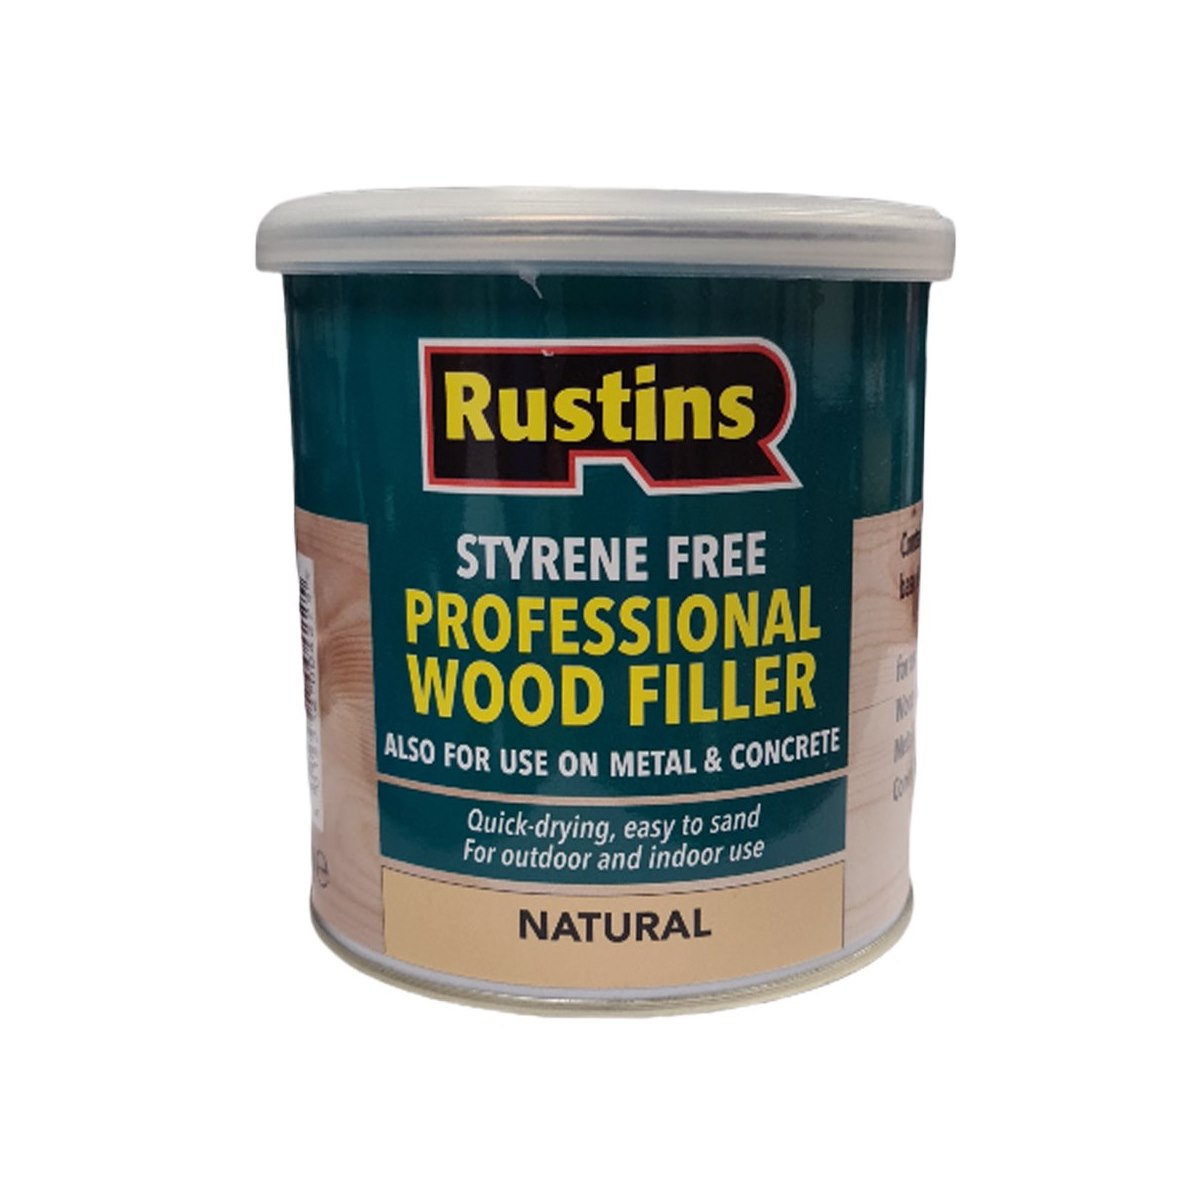 Rustins Styrene Free Professional Wood Filler Natural 1kg